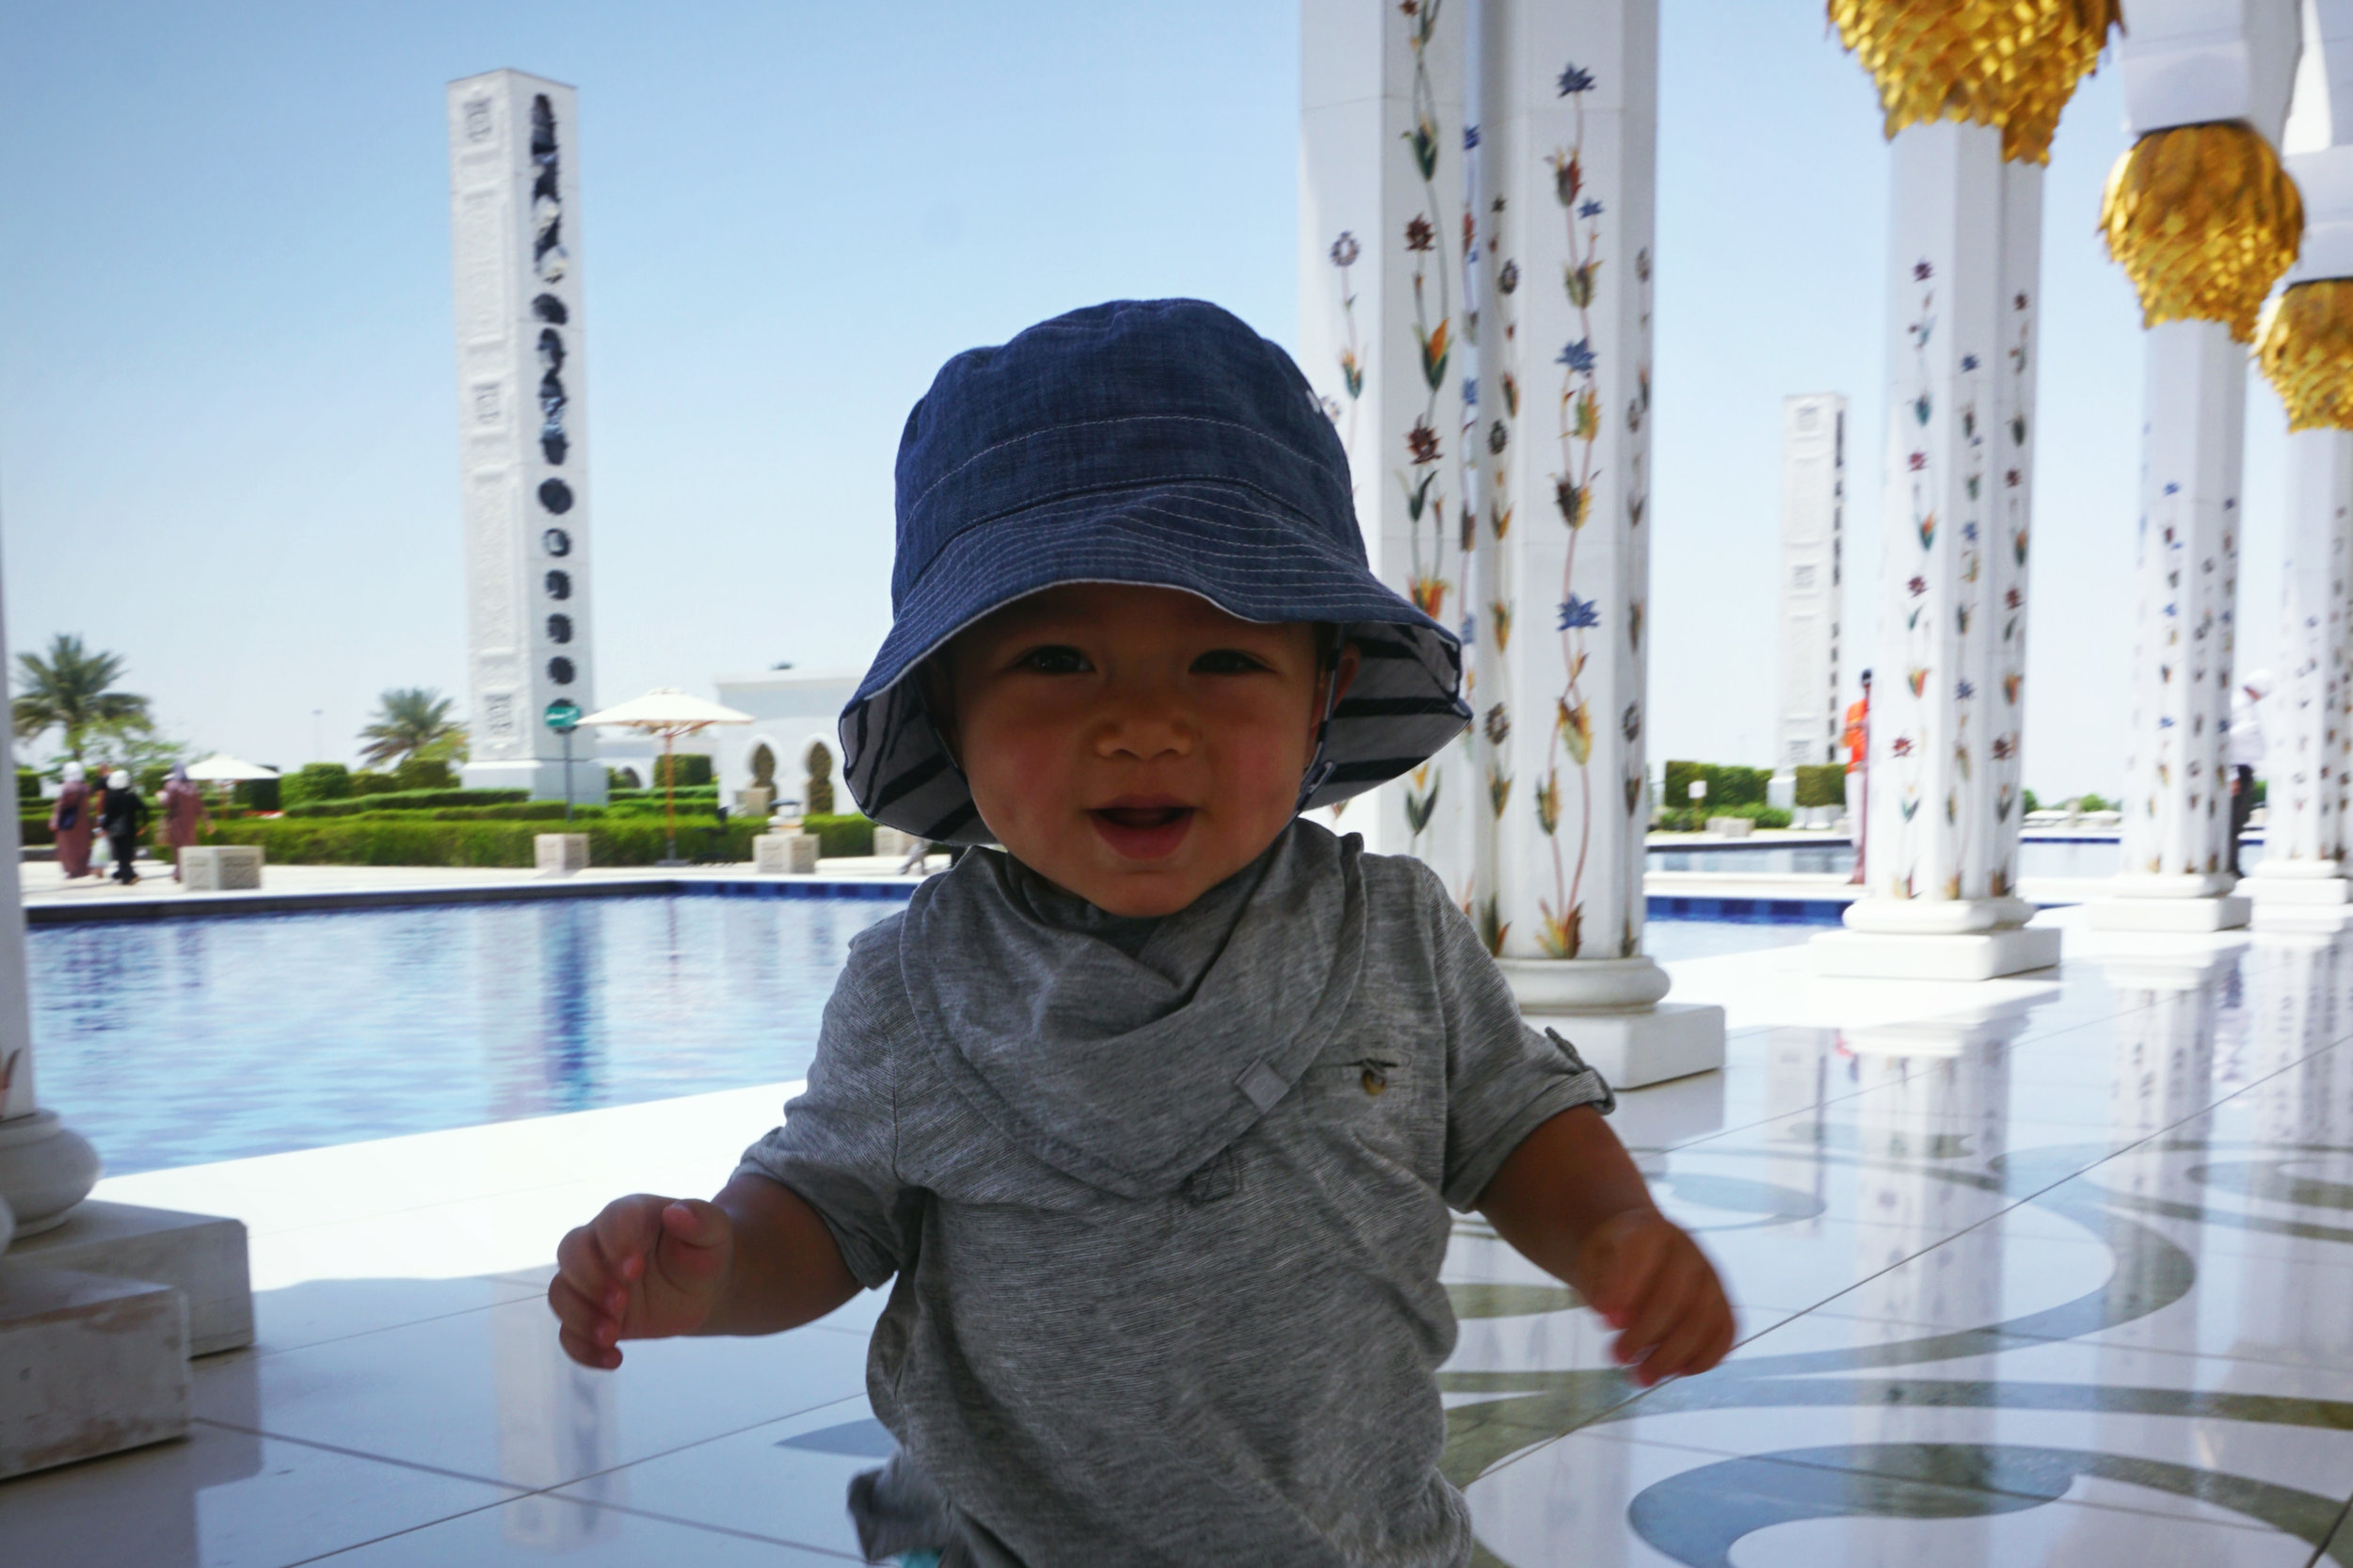 UAE_Abu Dhabi_Sheikh Zayed Mosque_baby toddler walking.jpg